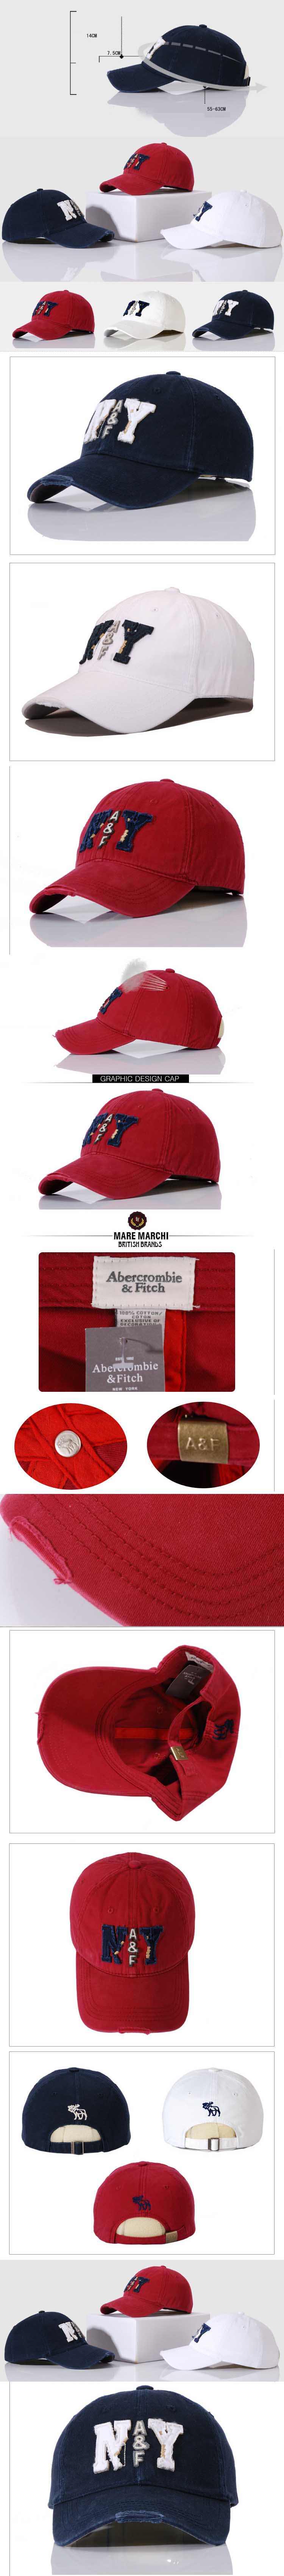 cari topi pria ? dengan motif new york dari brand ternama Abercrombie & Fitch, temukan koleksi terlengkap topi pria online hanya disini , klik dan pesan disini proses mudah dan pengiriman cepat.